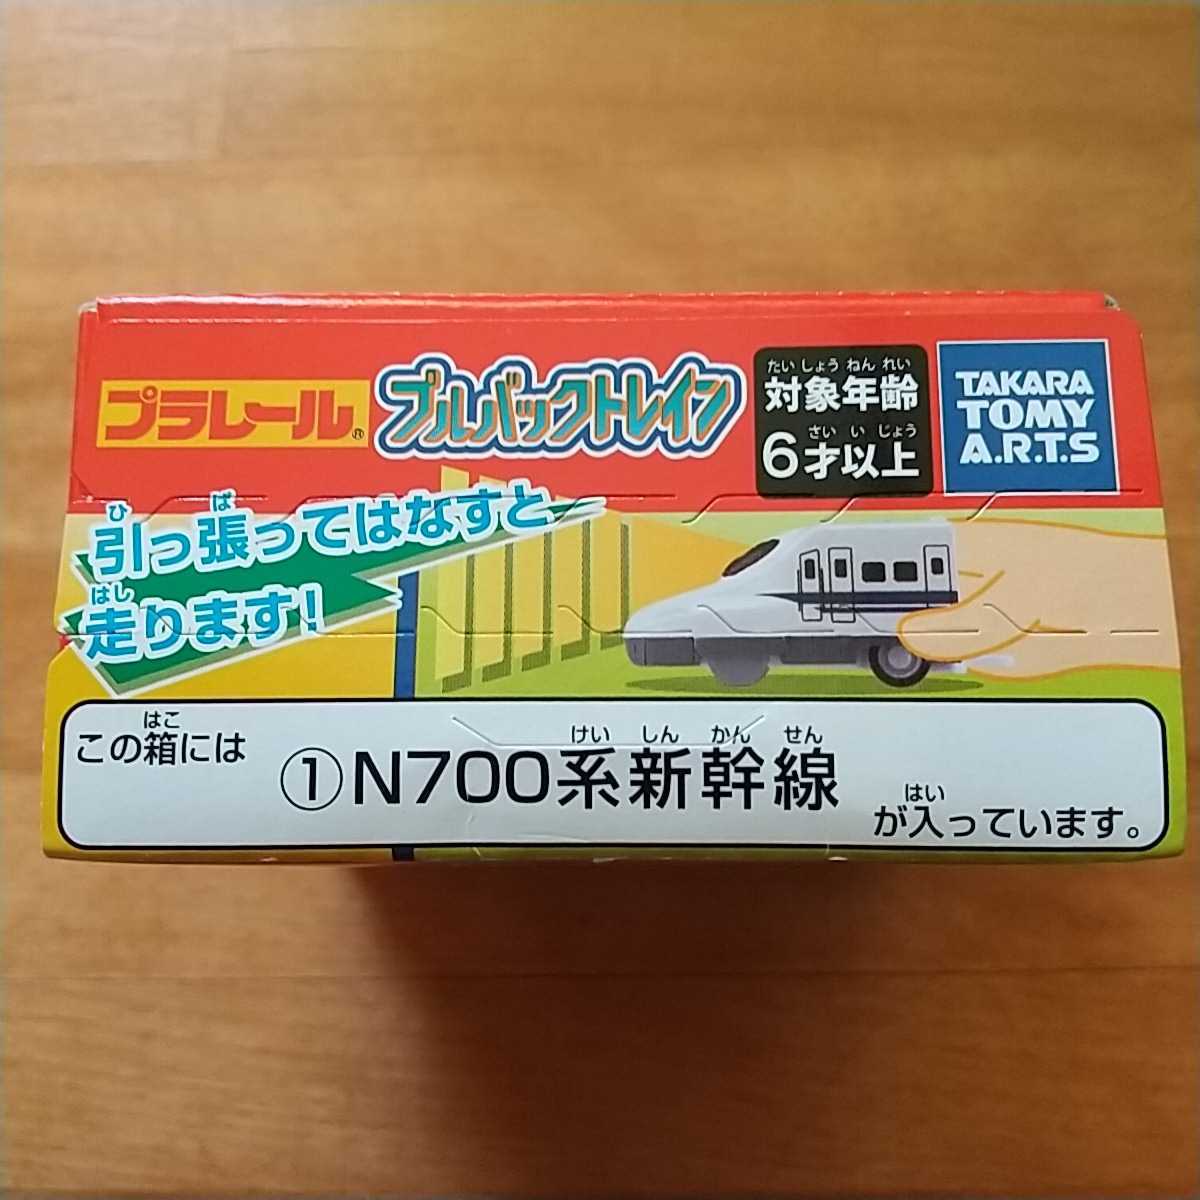 【タカラトミーアーツ】プラレール プルバックトレイン N700系新幹線_画像3